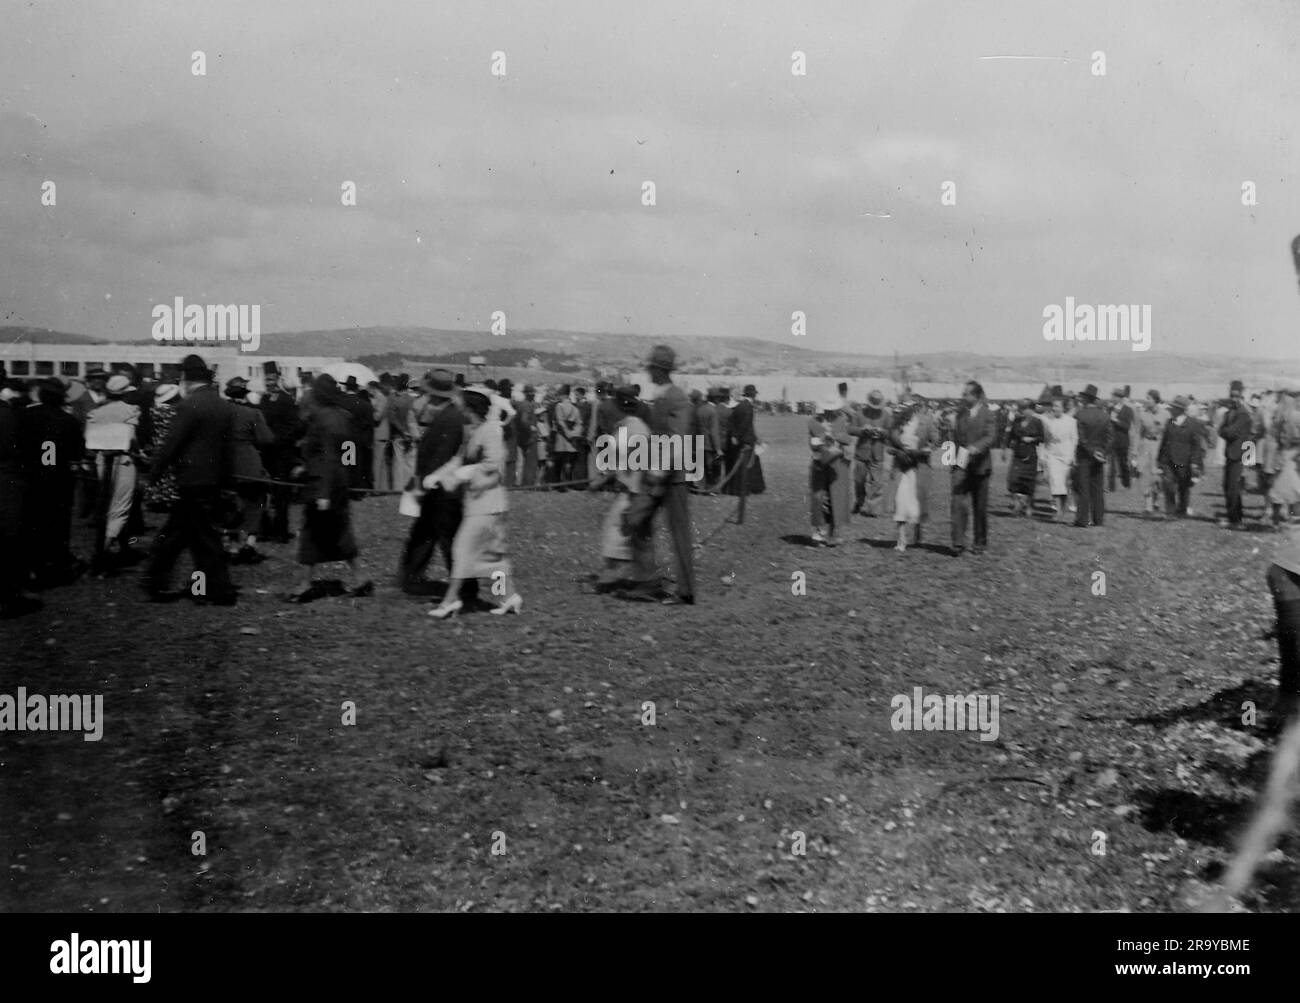 Zivilisten bei einem unbekannten Ereignis auf einem großen Feld, Palästina. Dieses Foto stammt aus einem Fotoalbum mit hauptsächlich Schnappschüssen, c1937, während der Besetzung Palästinas durch die britische Armee. Zwischen 1920 und 1948 verwaltete Großbritannien Palästina im Namen des Völkerbundes, ein Zeitraum, der als "britisches Mandat" bezeichnet wird. Stockfoto